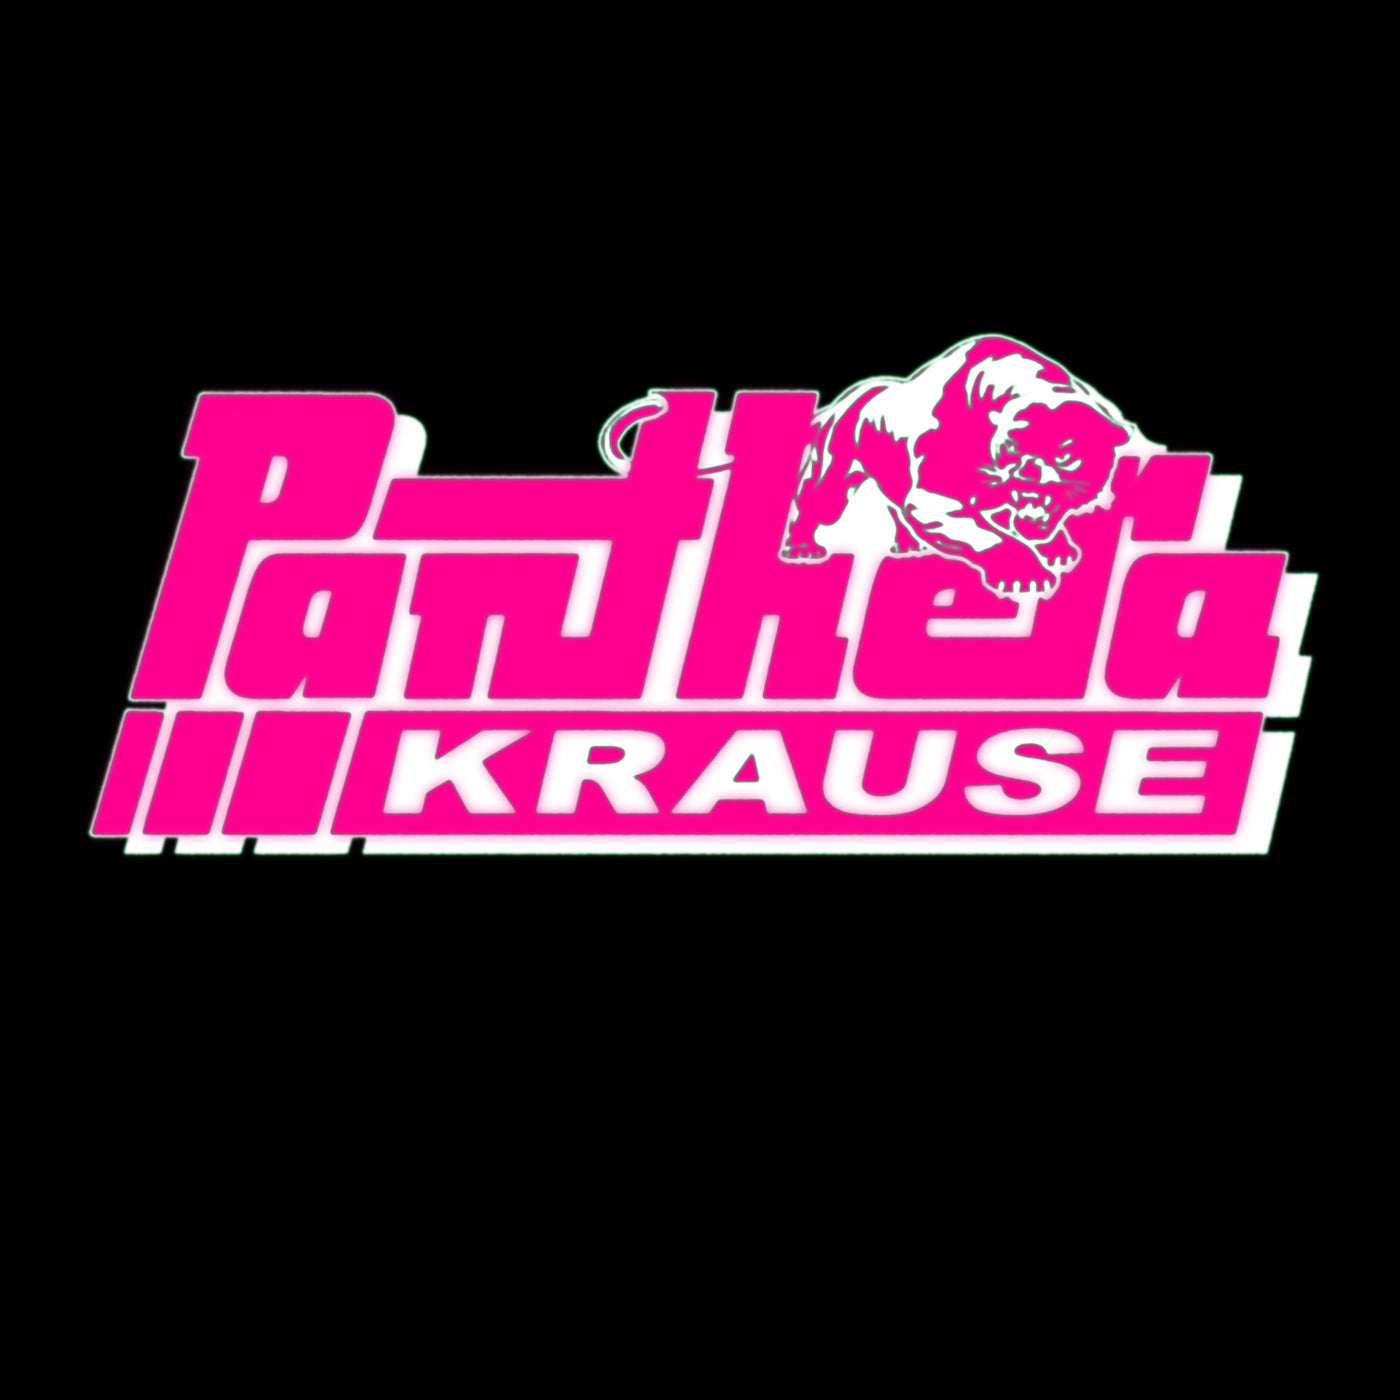 Panthera Krause - Como Dada [RVN025]